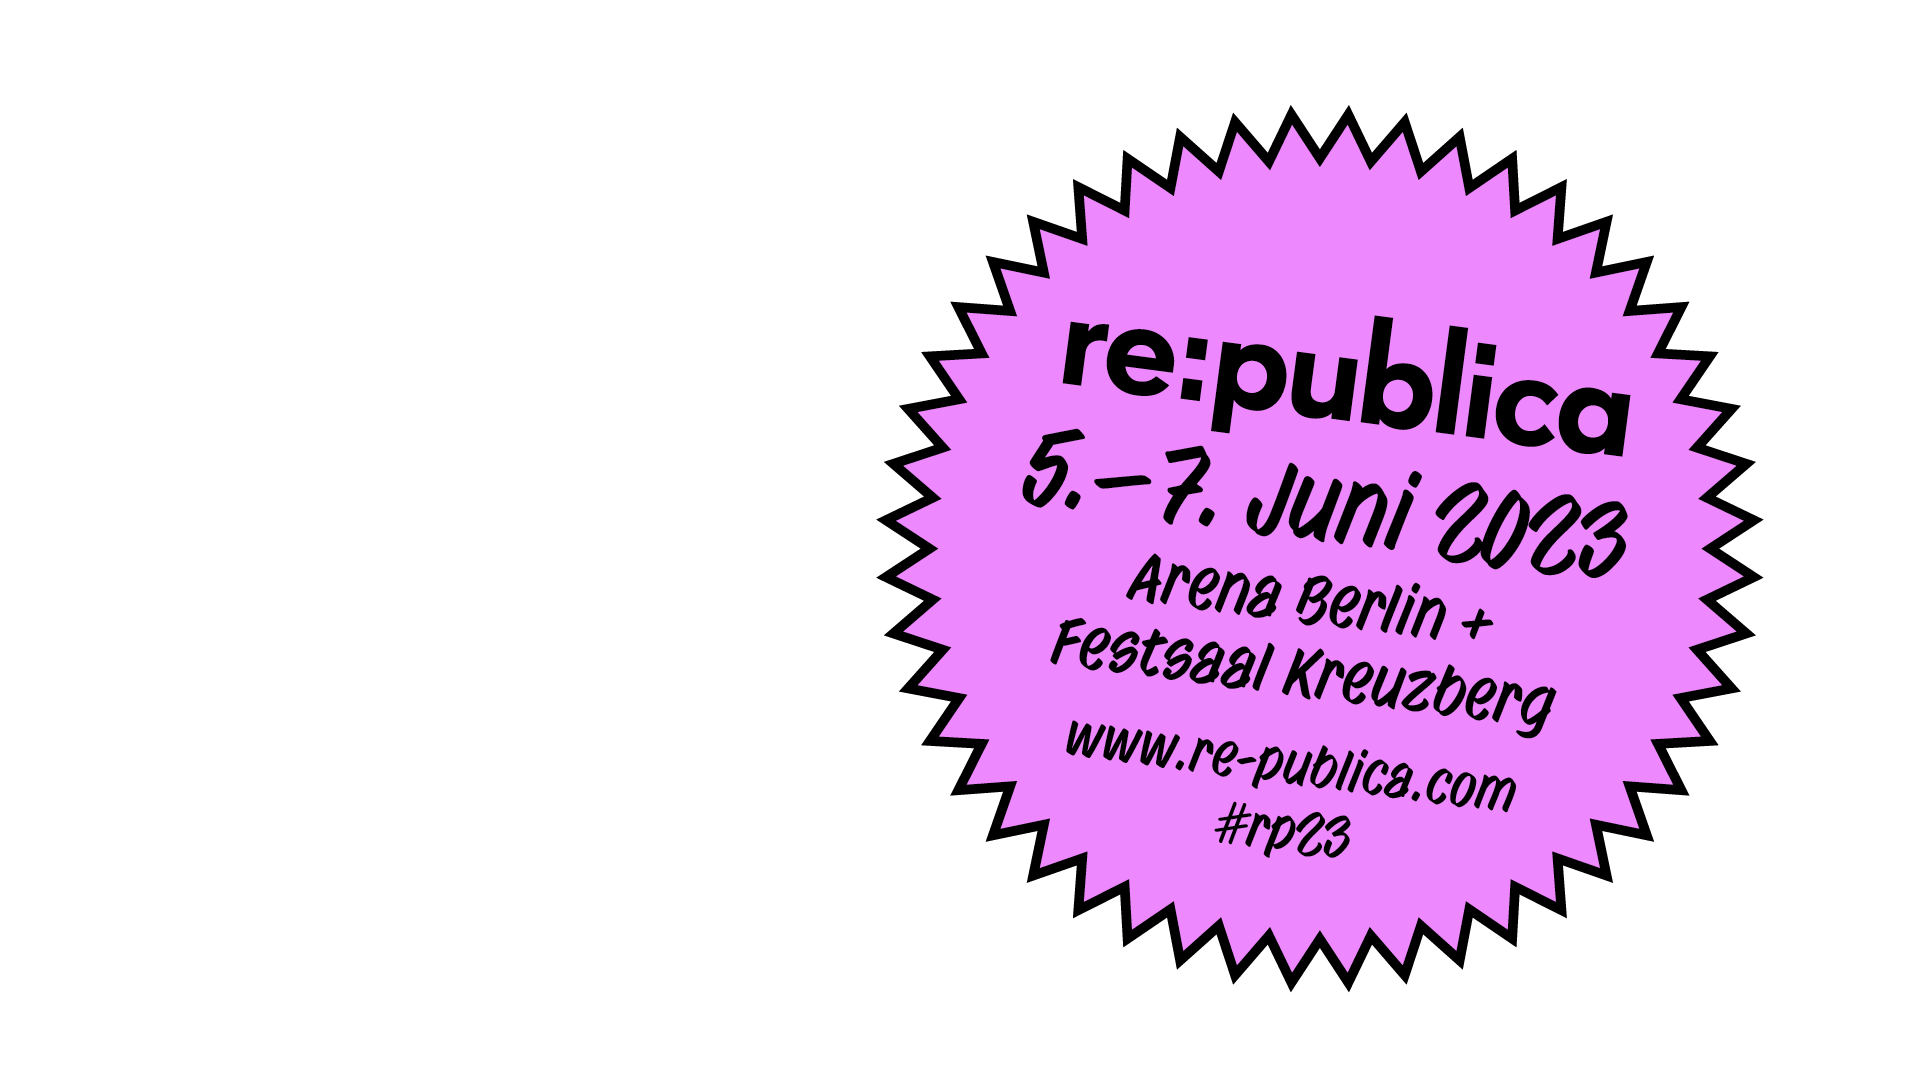 Save the Date! re:publica 2023: 5.-7. Juni 2023